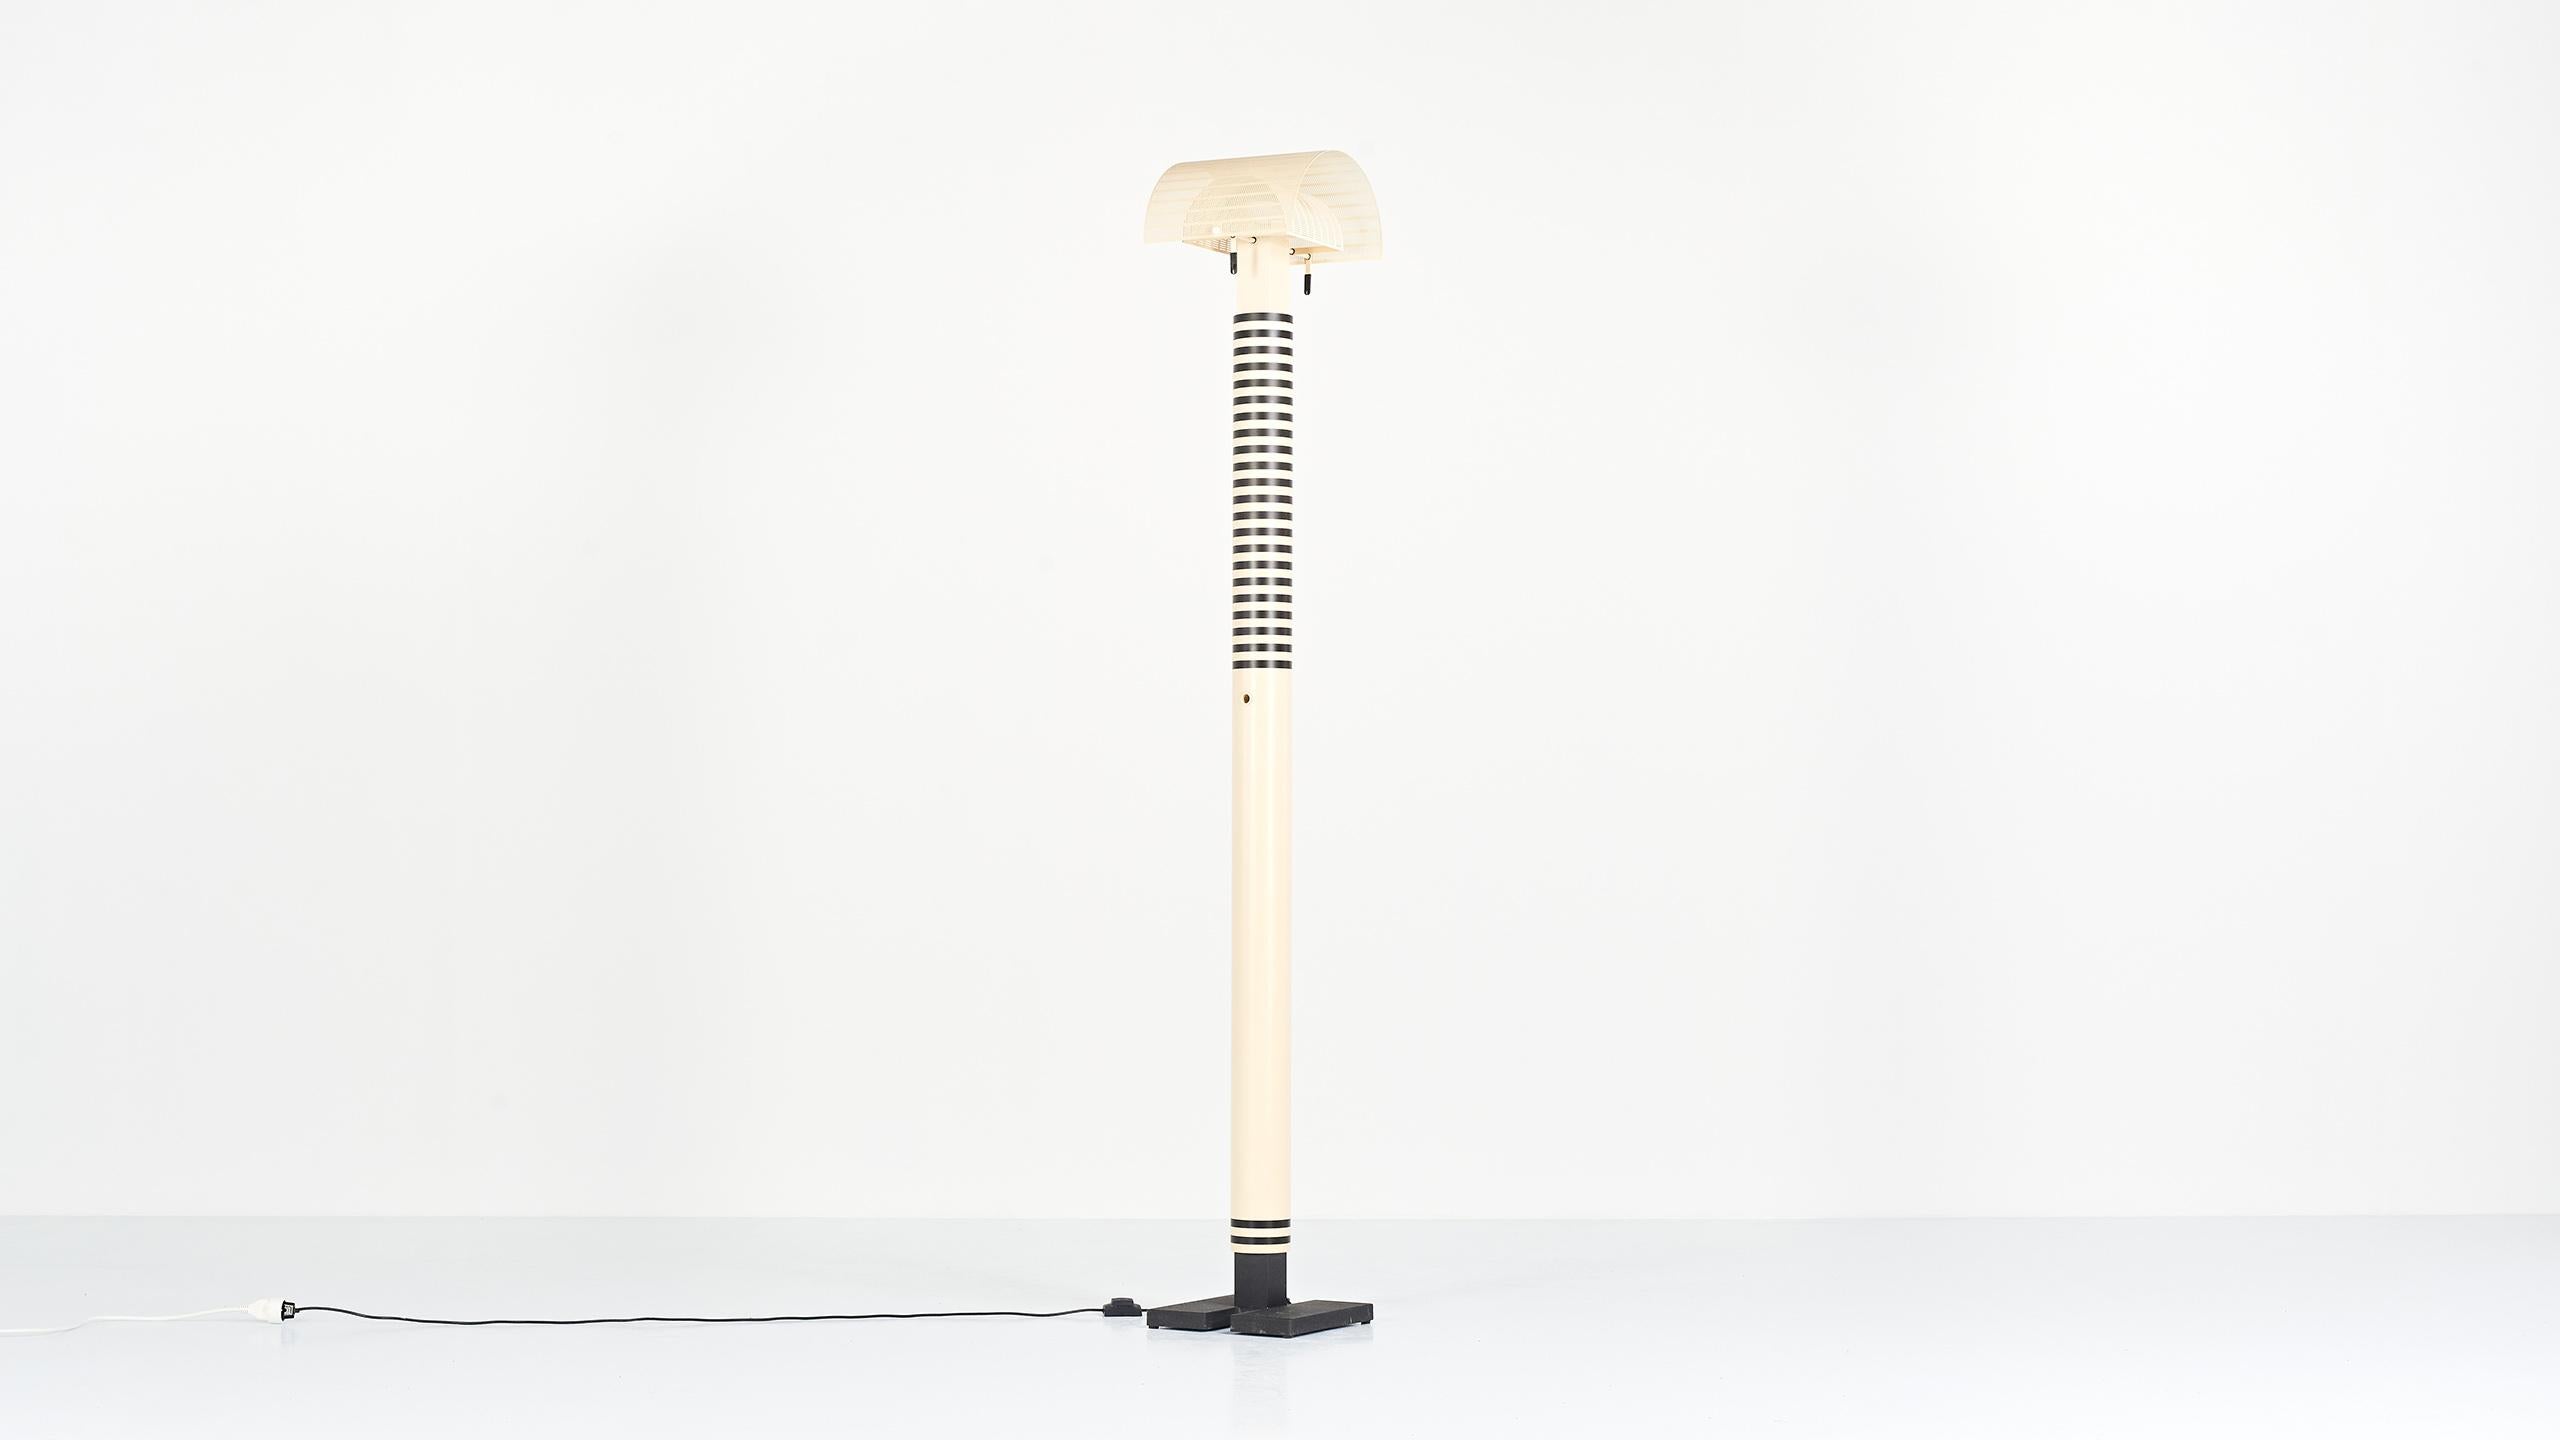 Italian Mario Botta, Shogun Terra Floor Lamp for Artemide